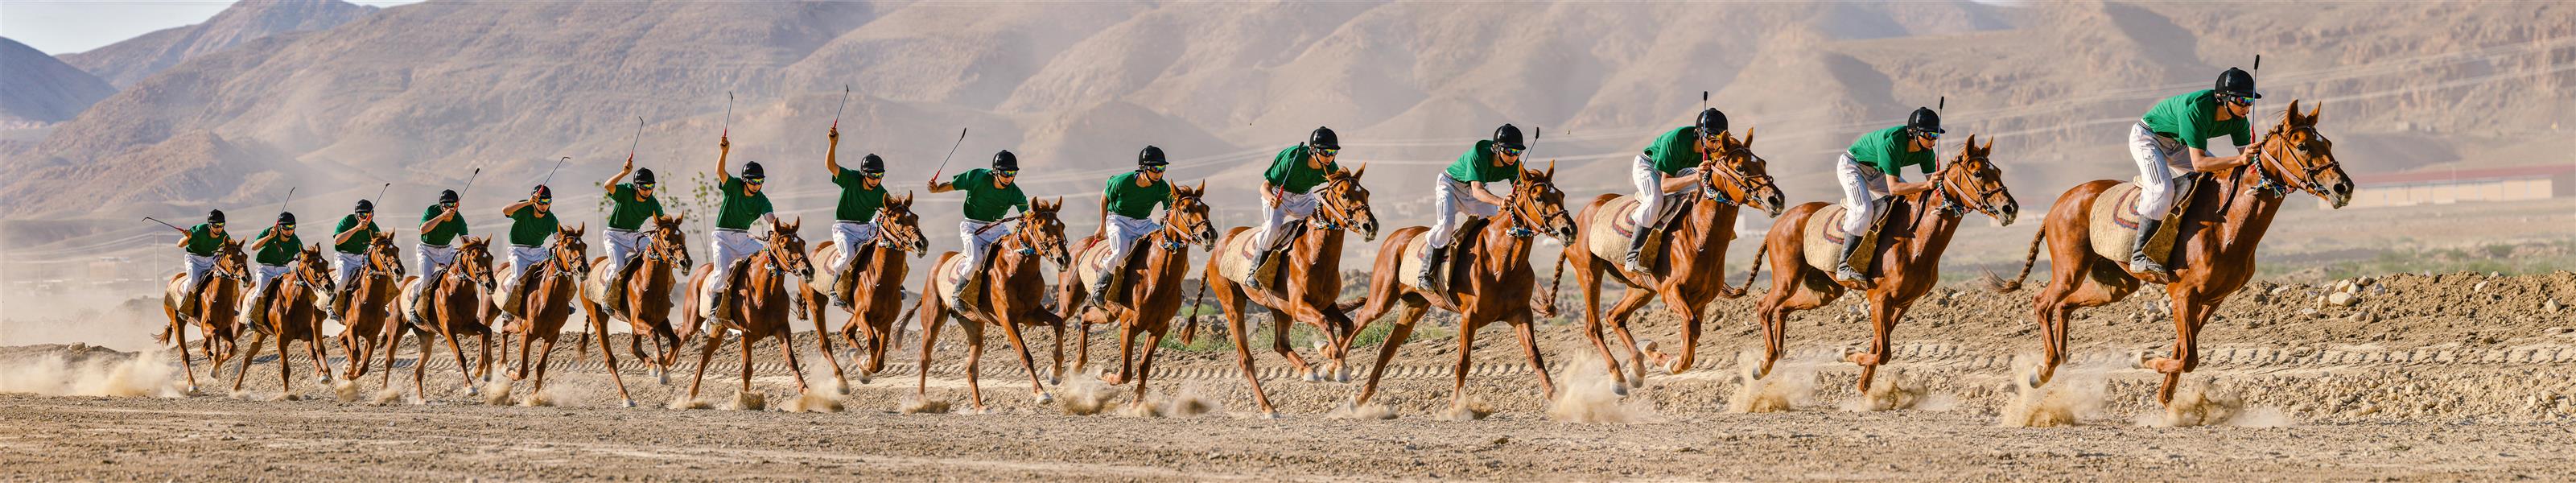 هنر عکاسی محفل عکاسی Mohammad amini حرکت اسب سوار و اسب در یک مسابقه اسب دوانی.
مجموعه تصاویر فرم حرکت در قالب یک تصویر.